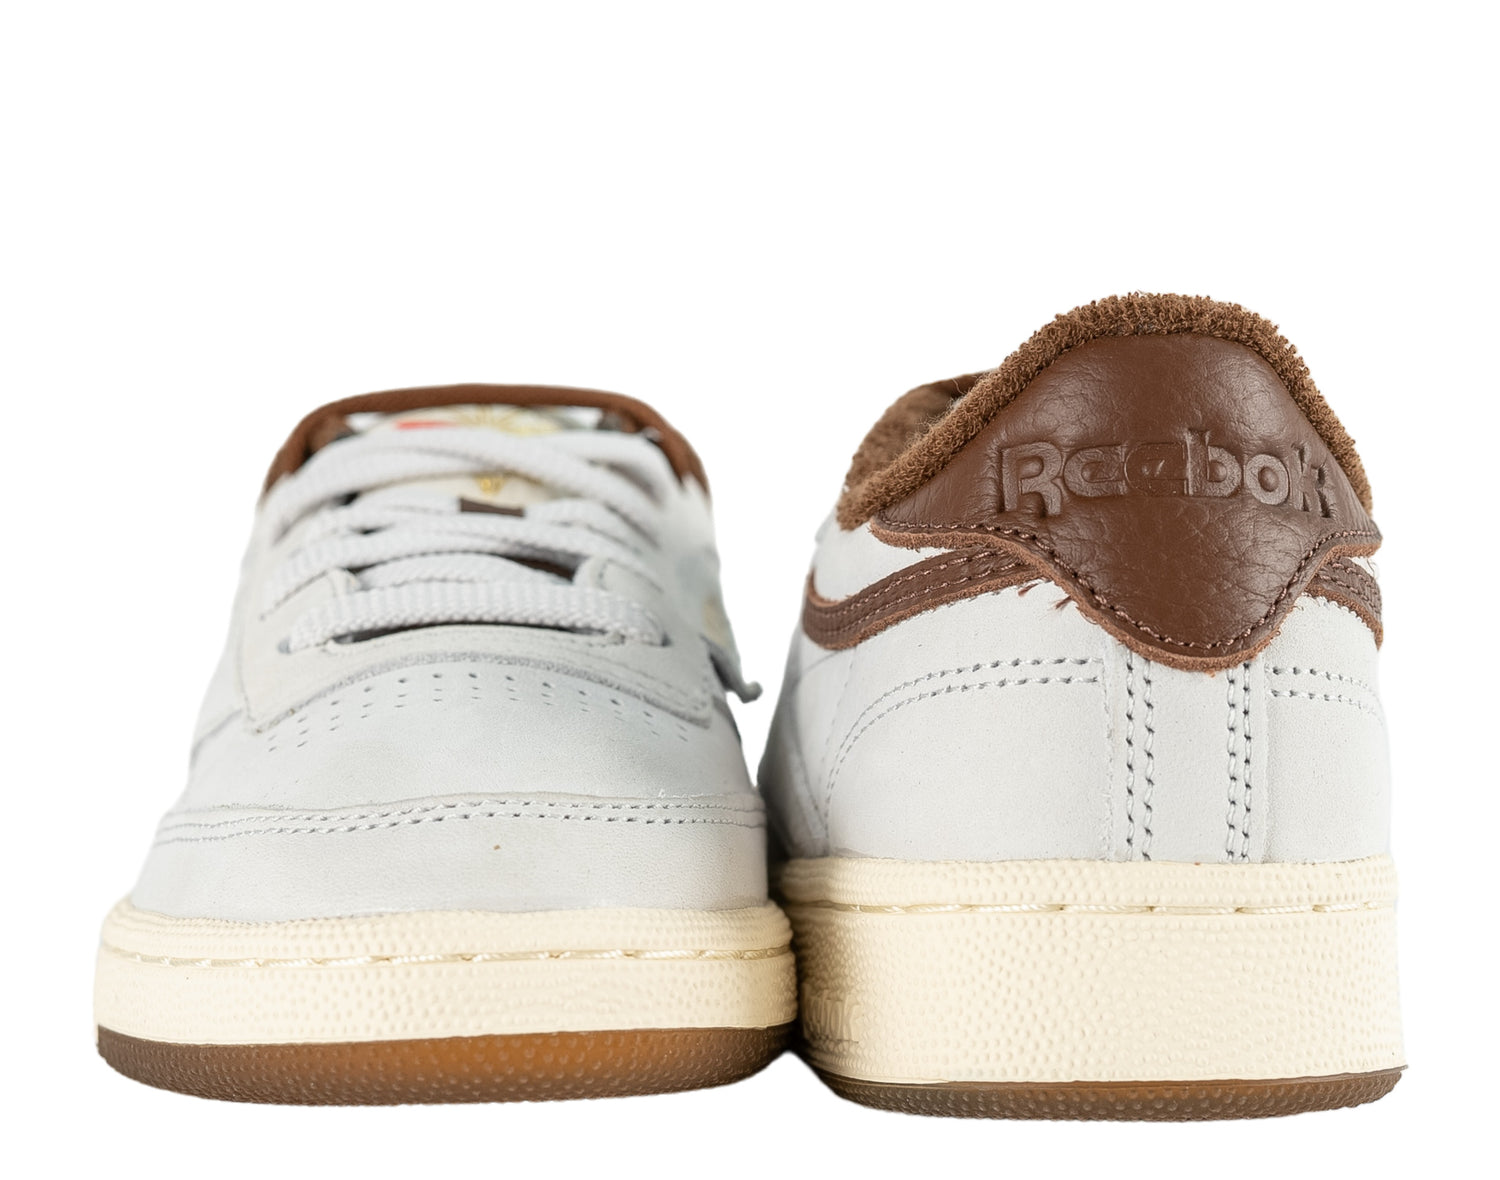 Reebok x Bodega Club C 85 15th Anniversary Men's Shoes